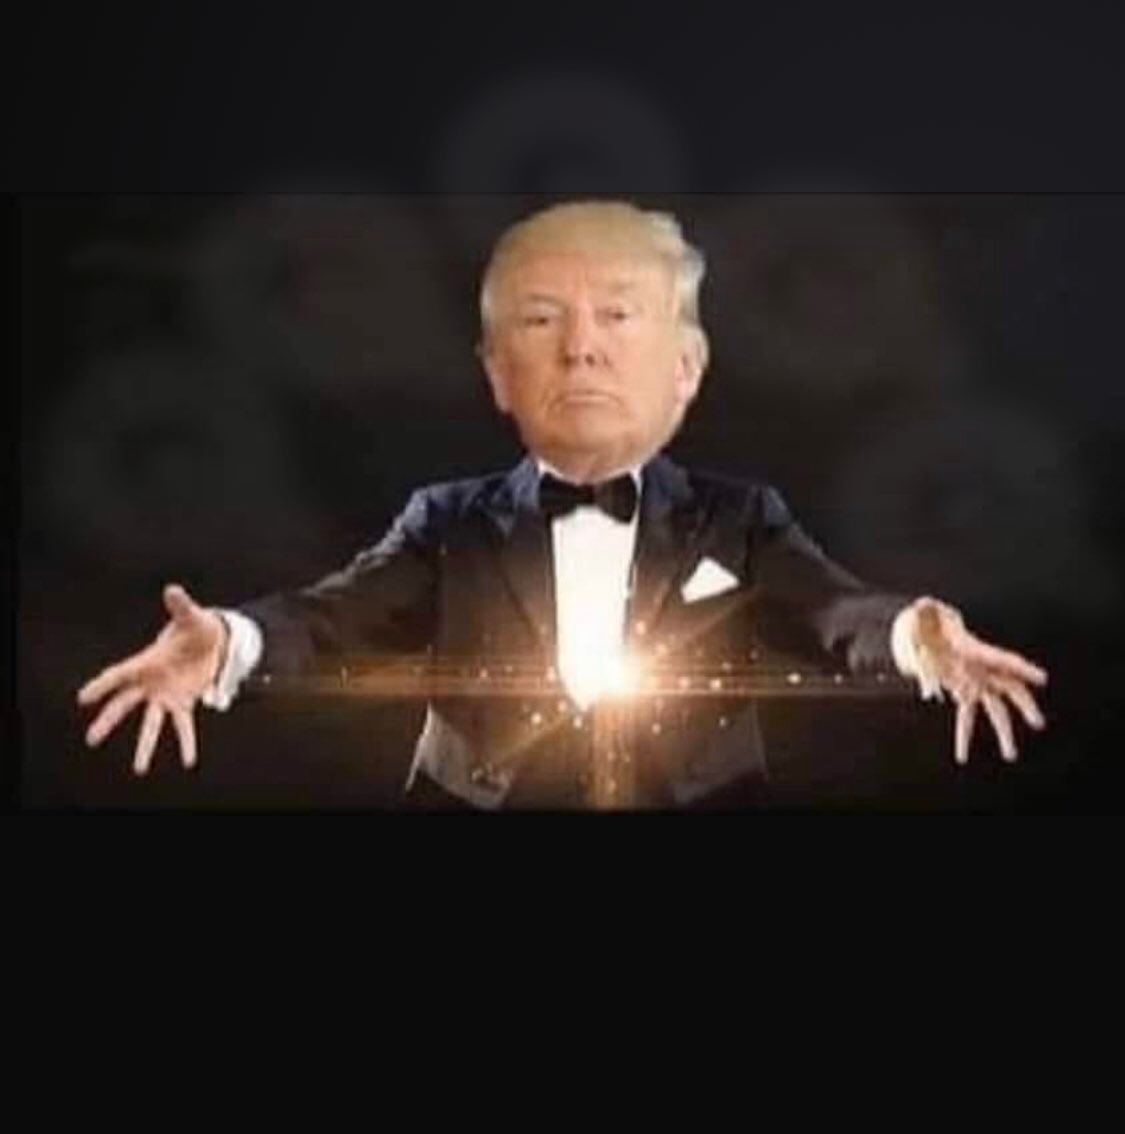 Magic Trump Blank Meme Template